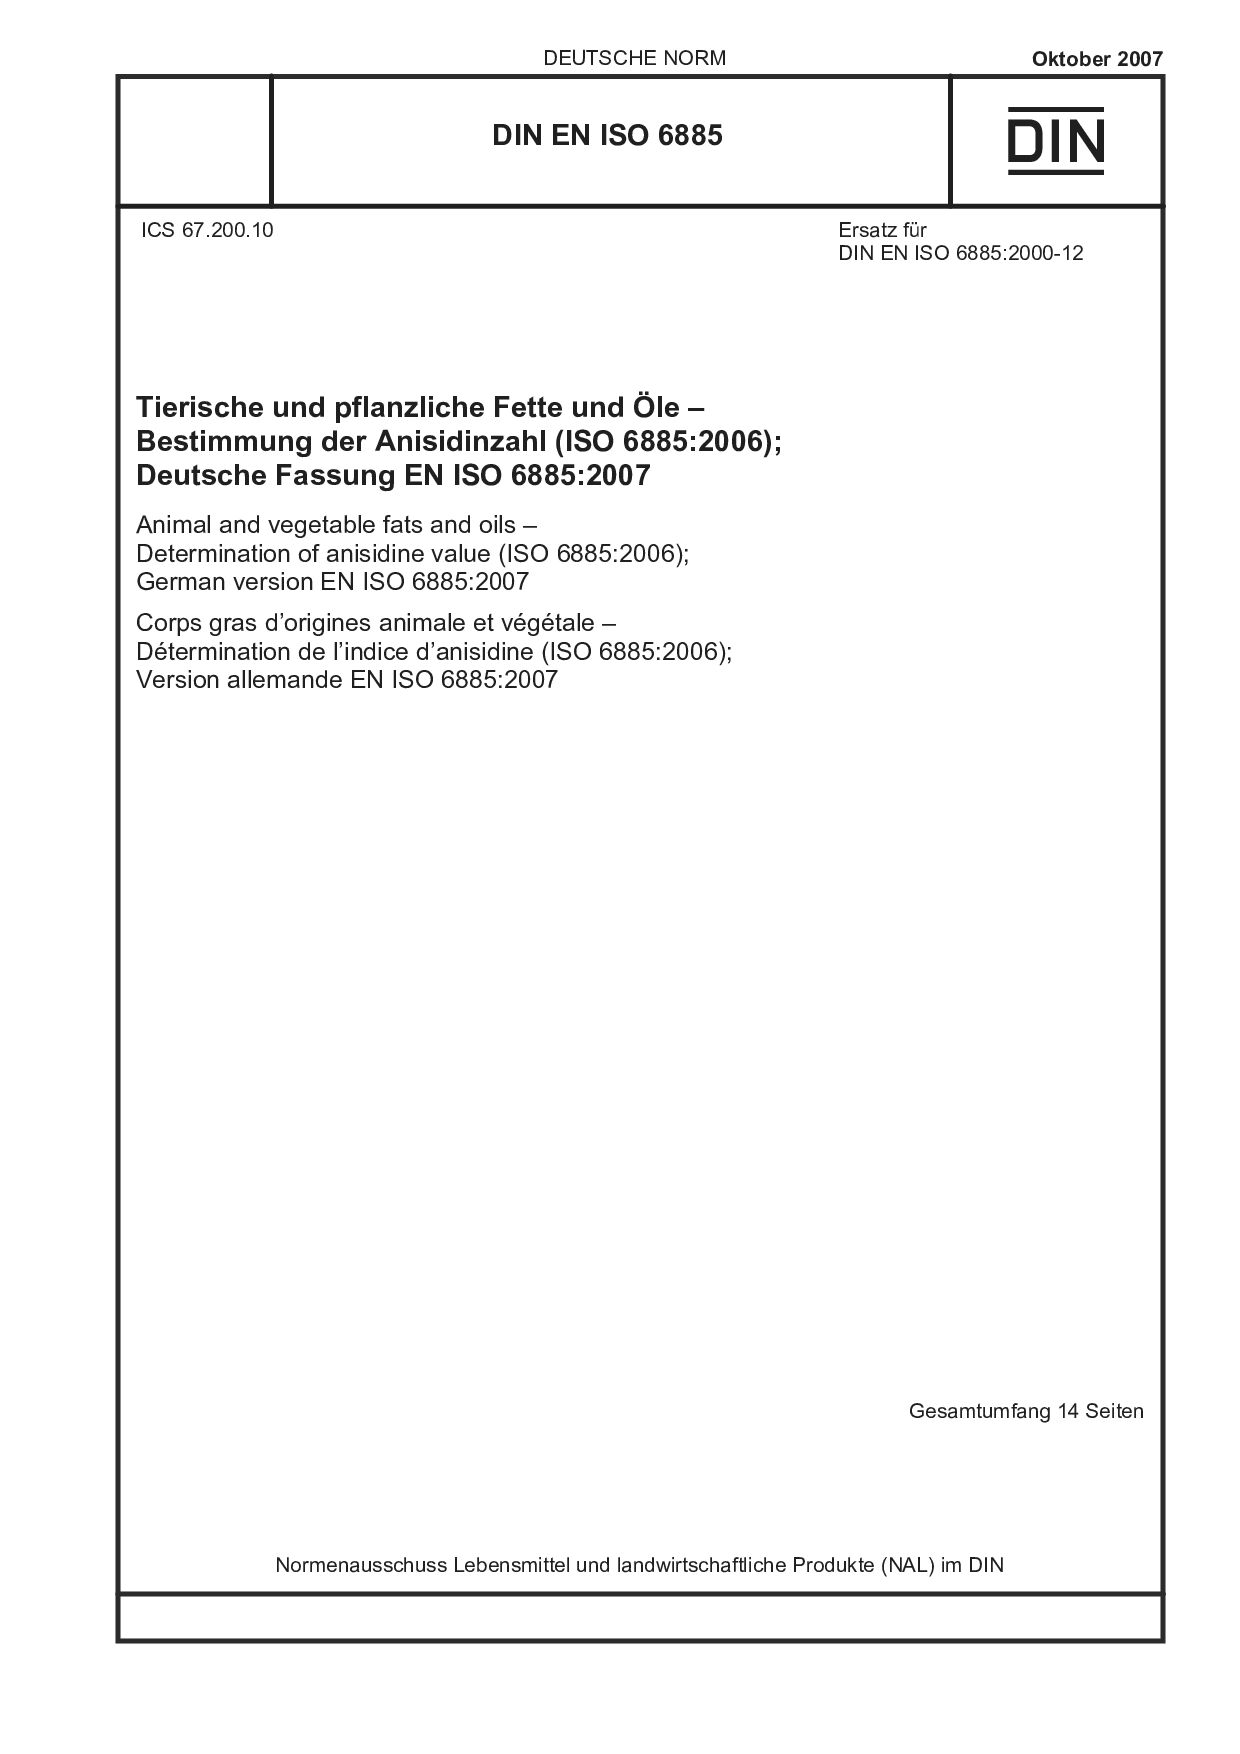 DIN EN ISO 6885:2007封面图